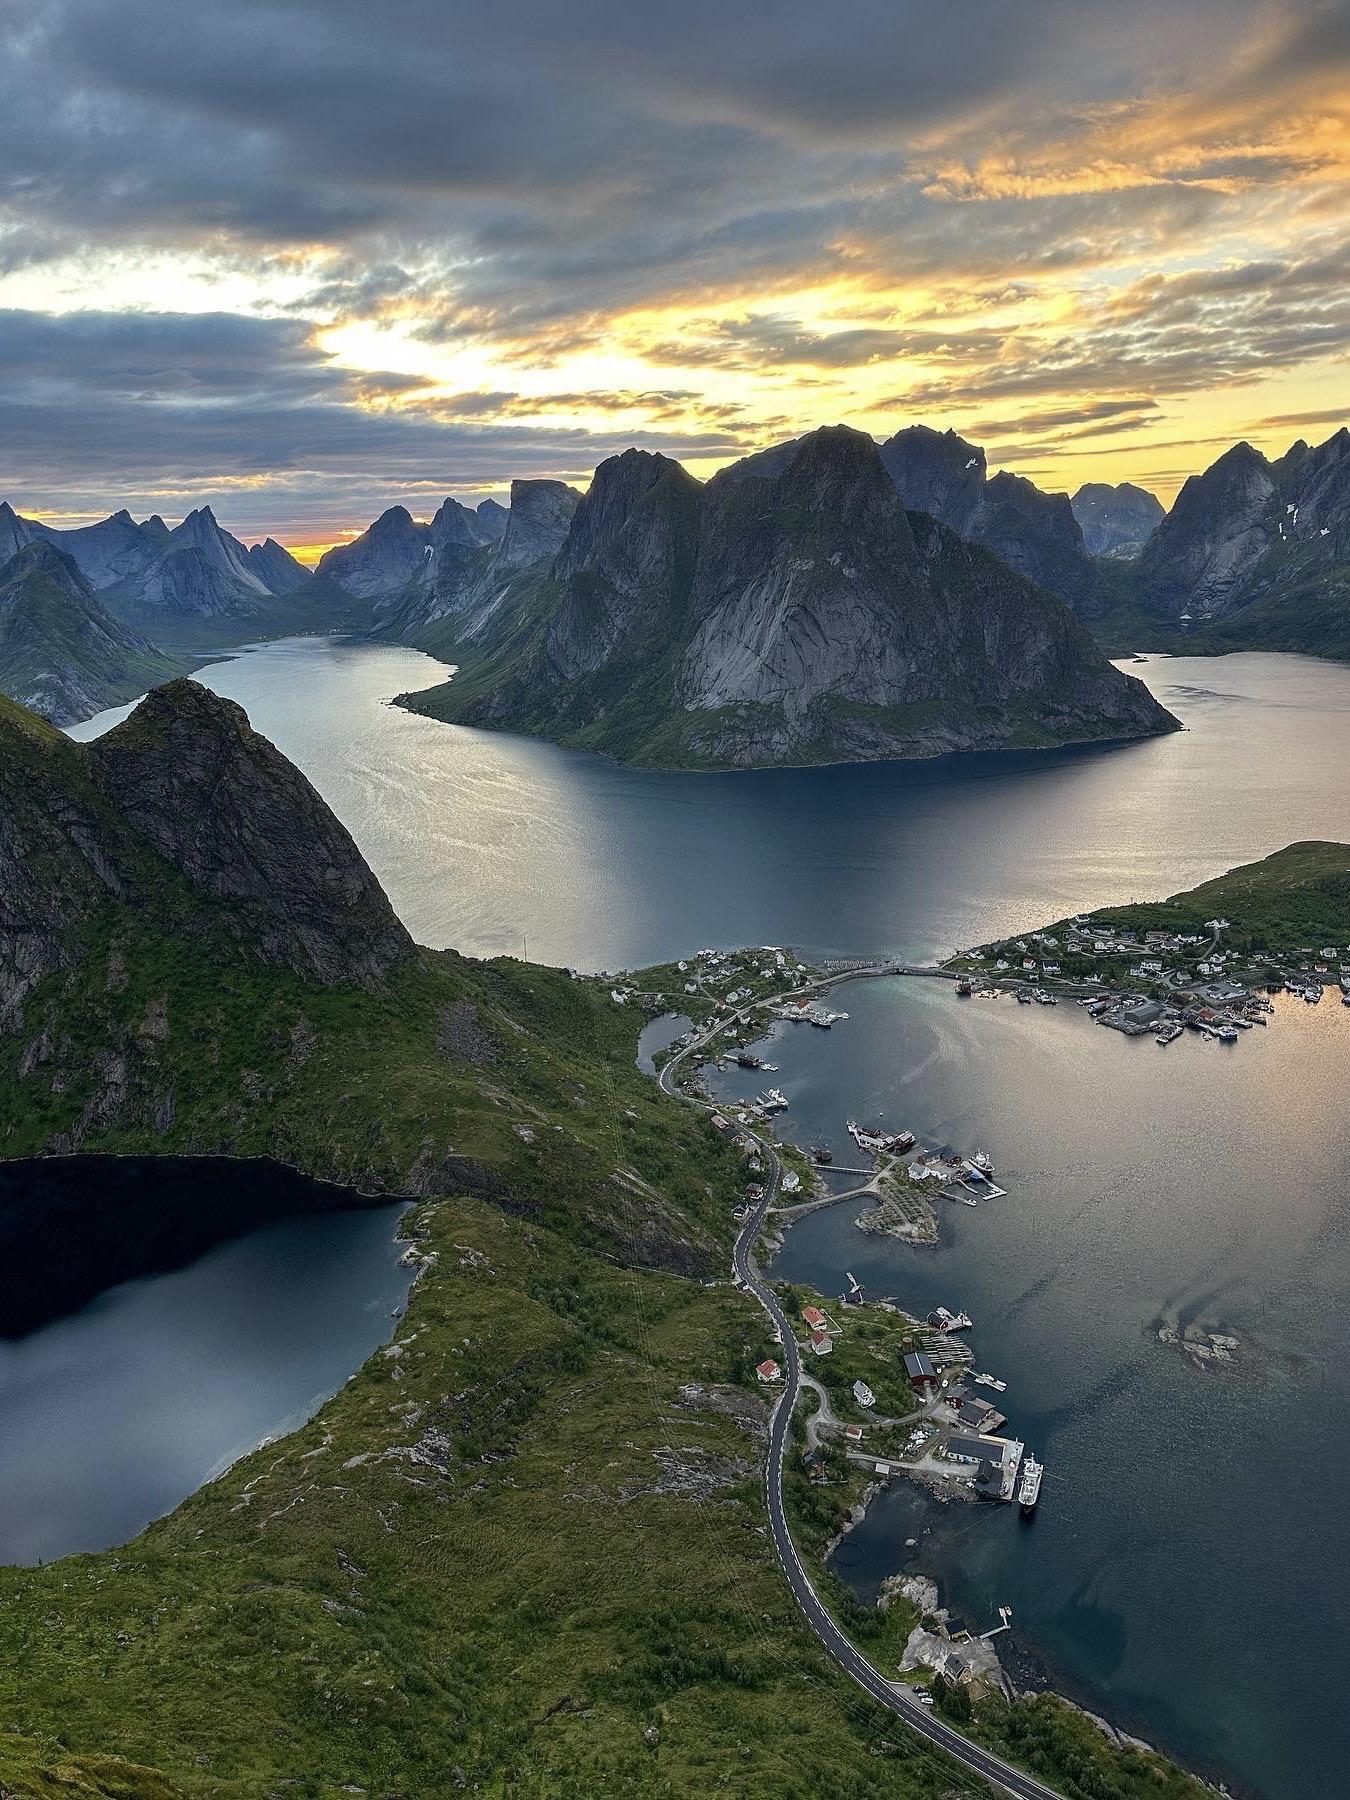 曾经地理书上的峡湾地貌 如今就在脚下 #挪威